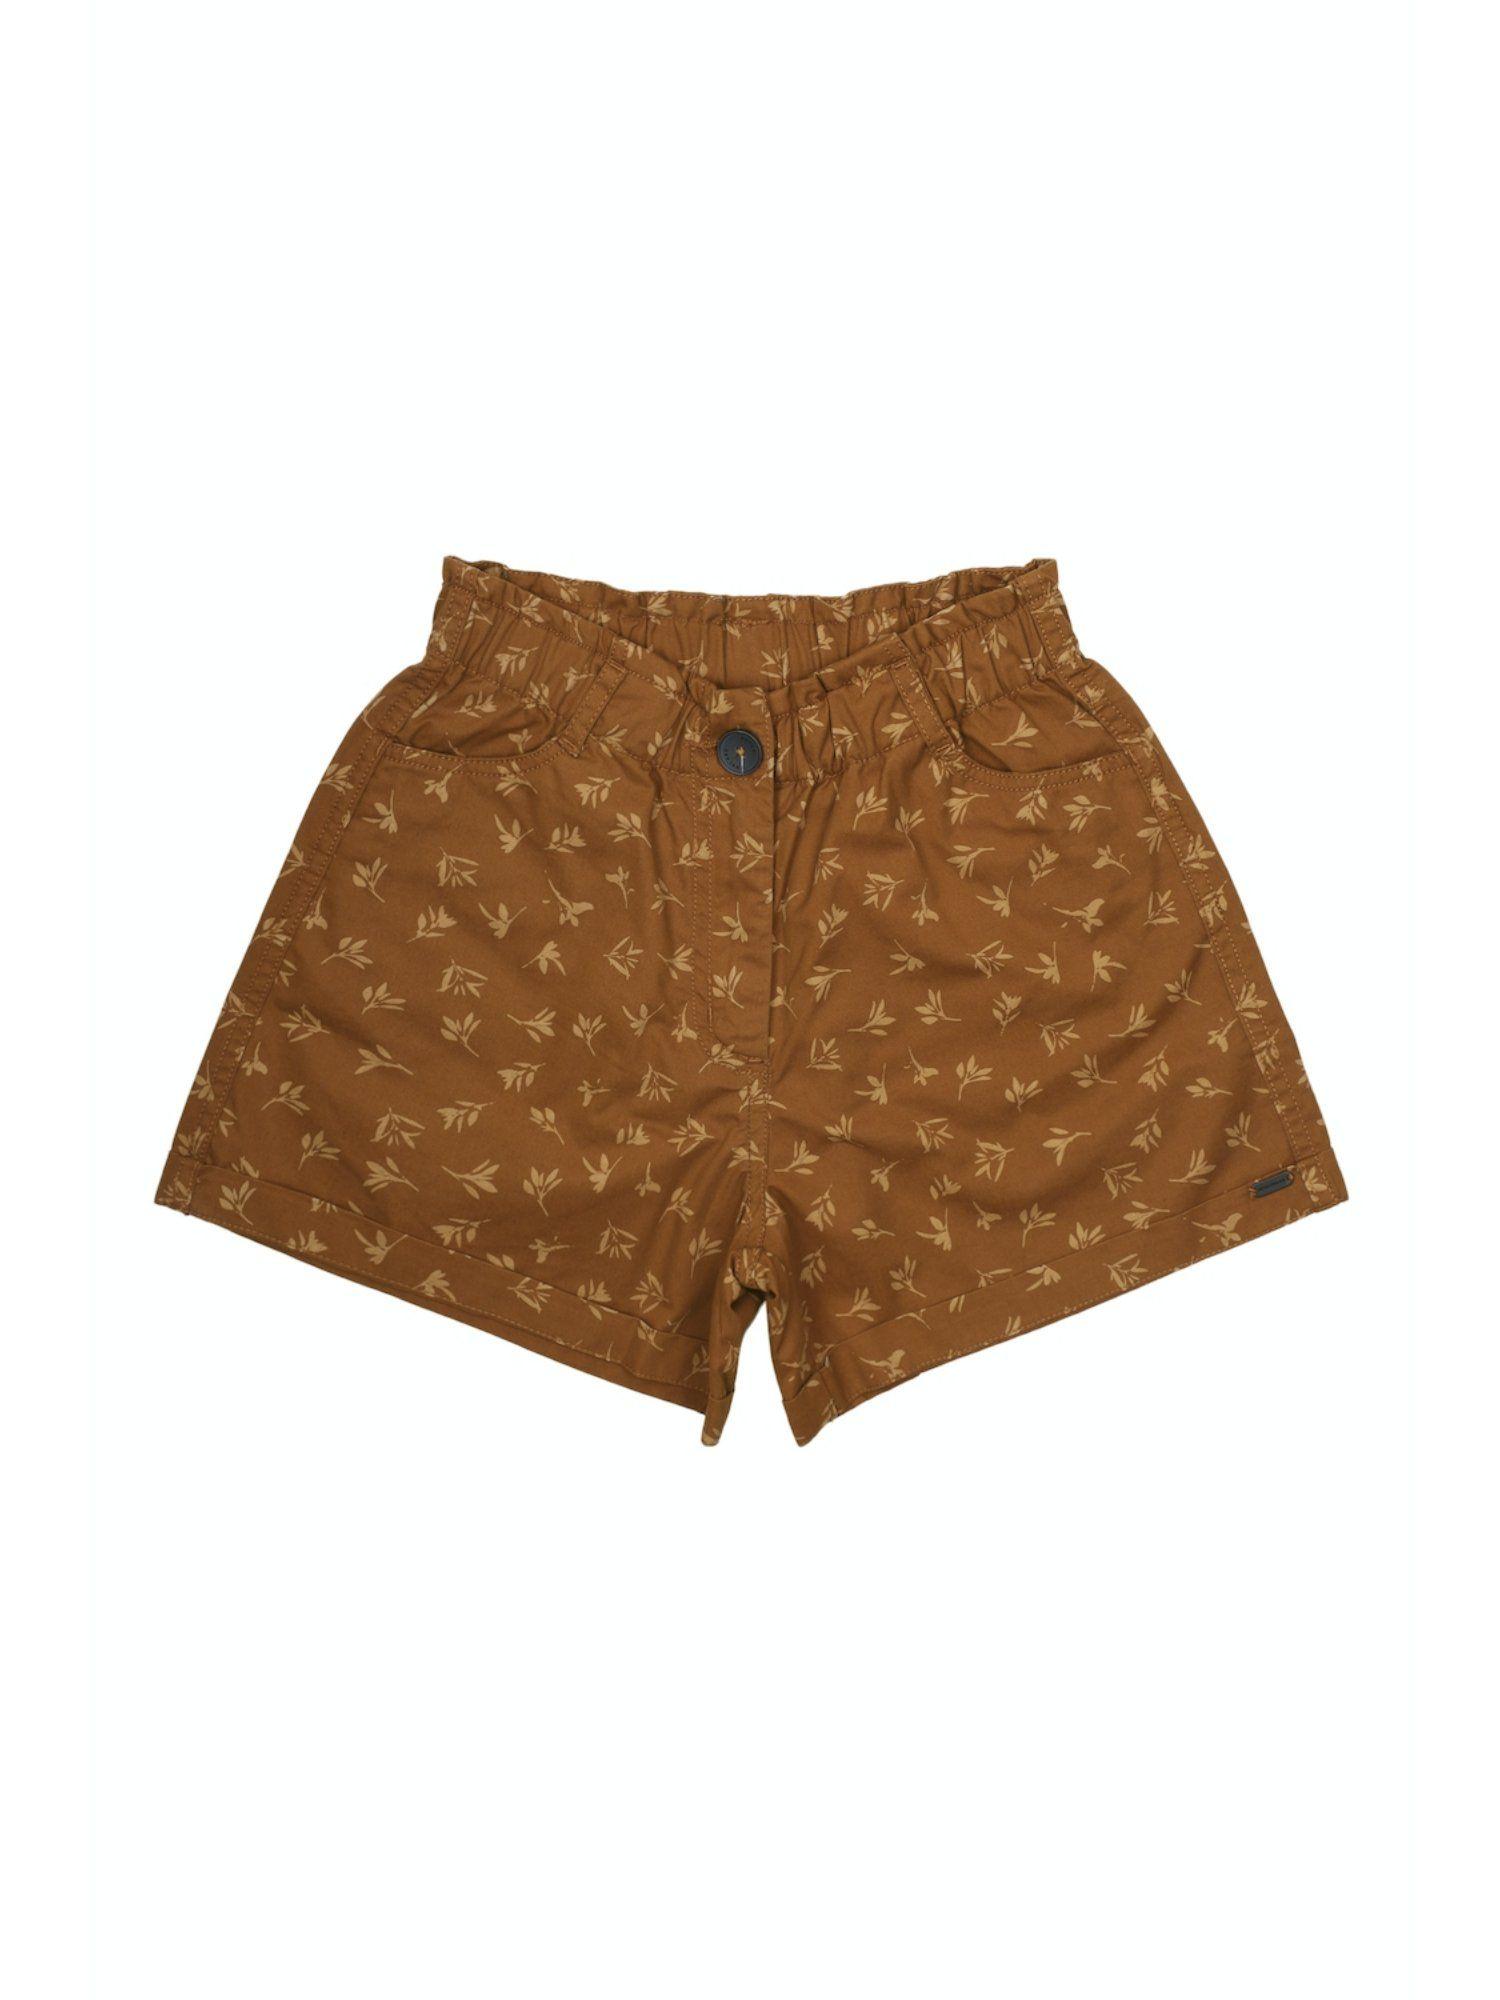 girls brown printed shorts